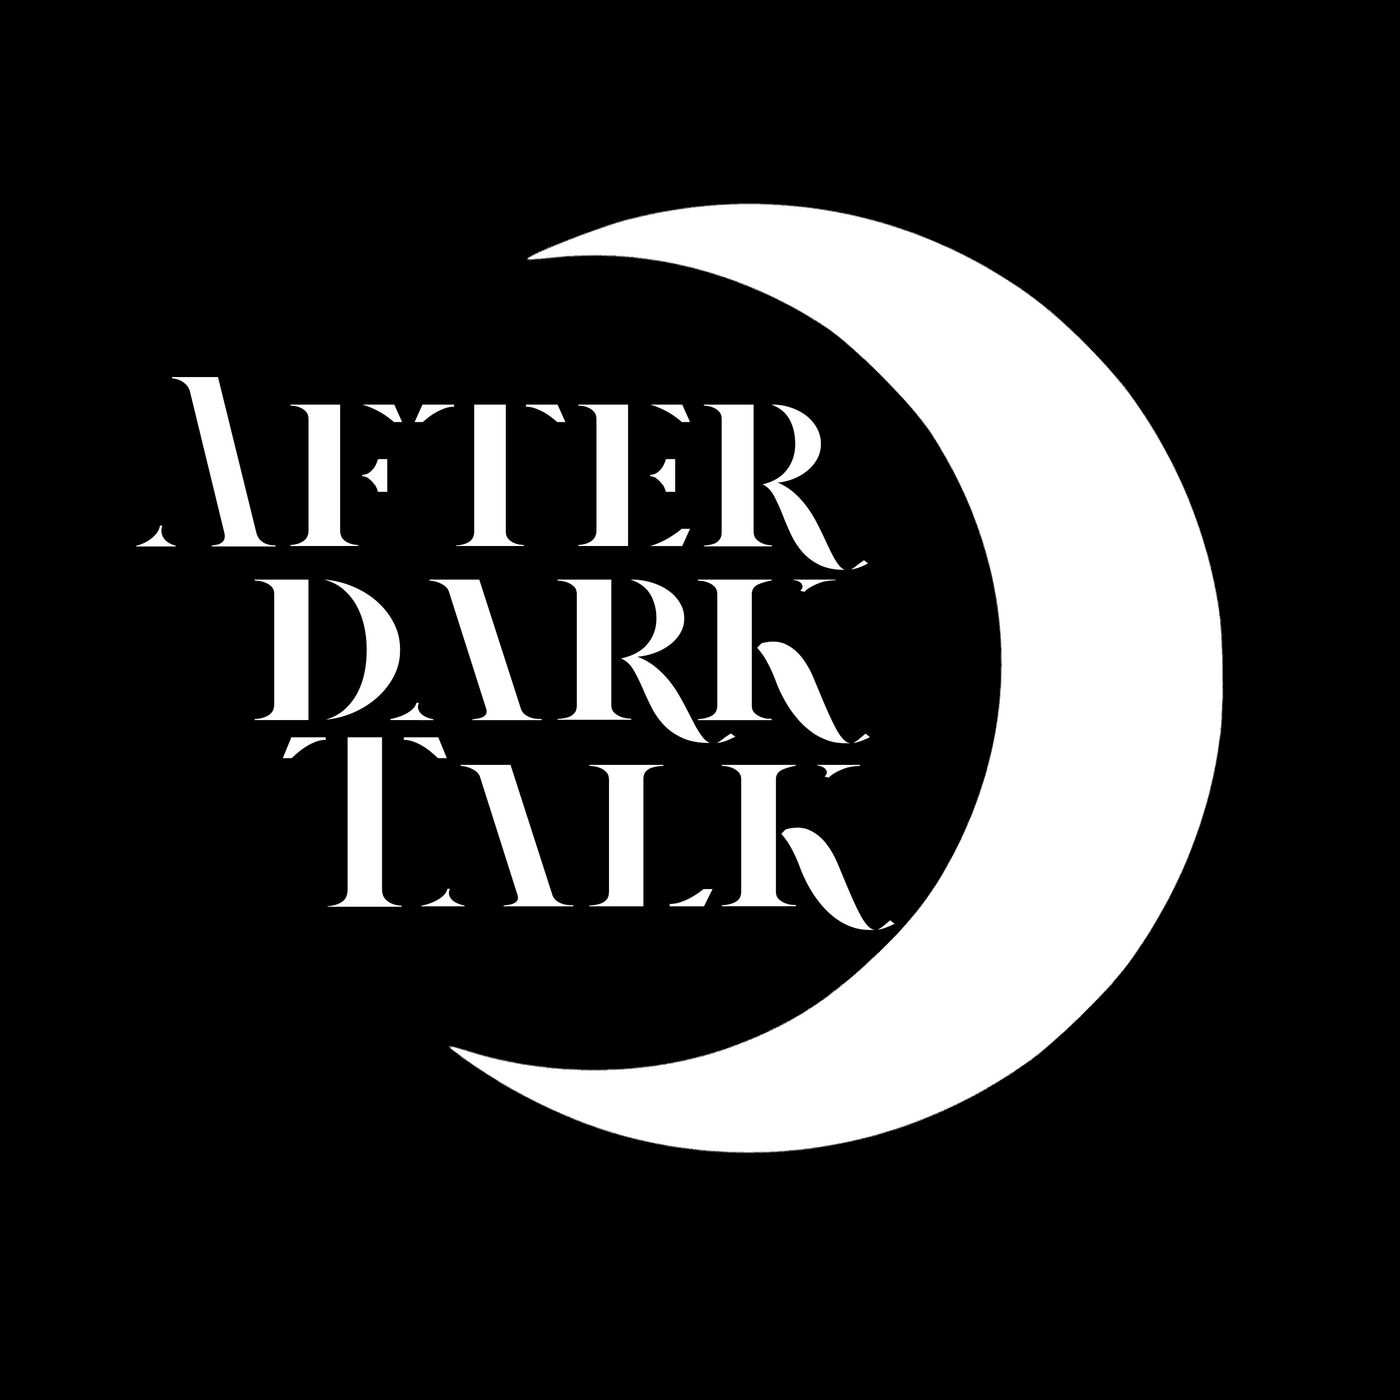 After Dark Talk